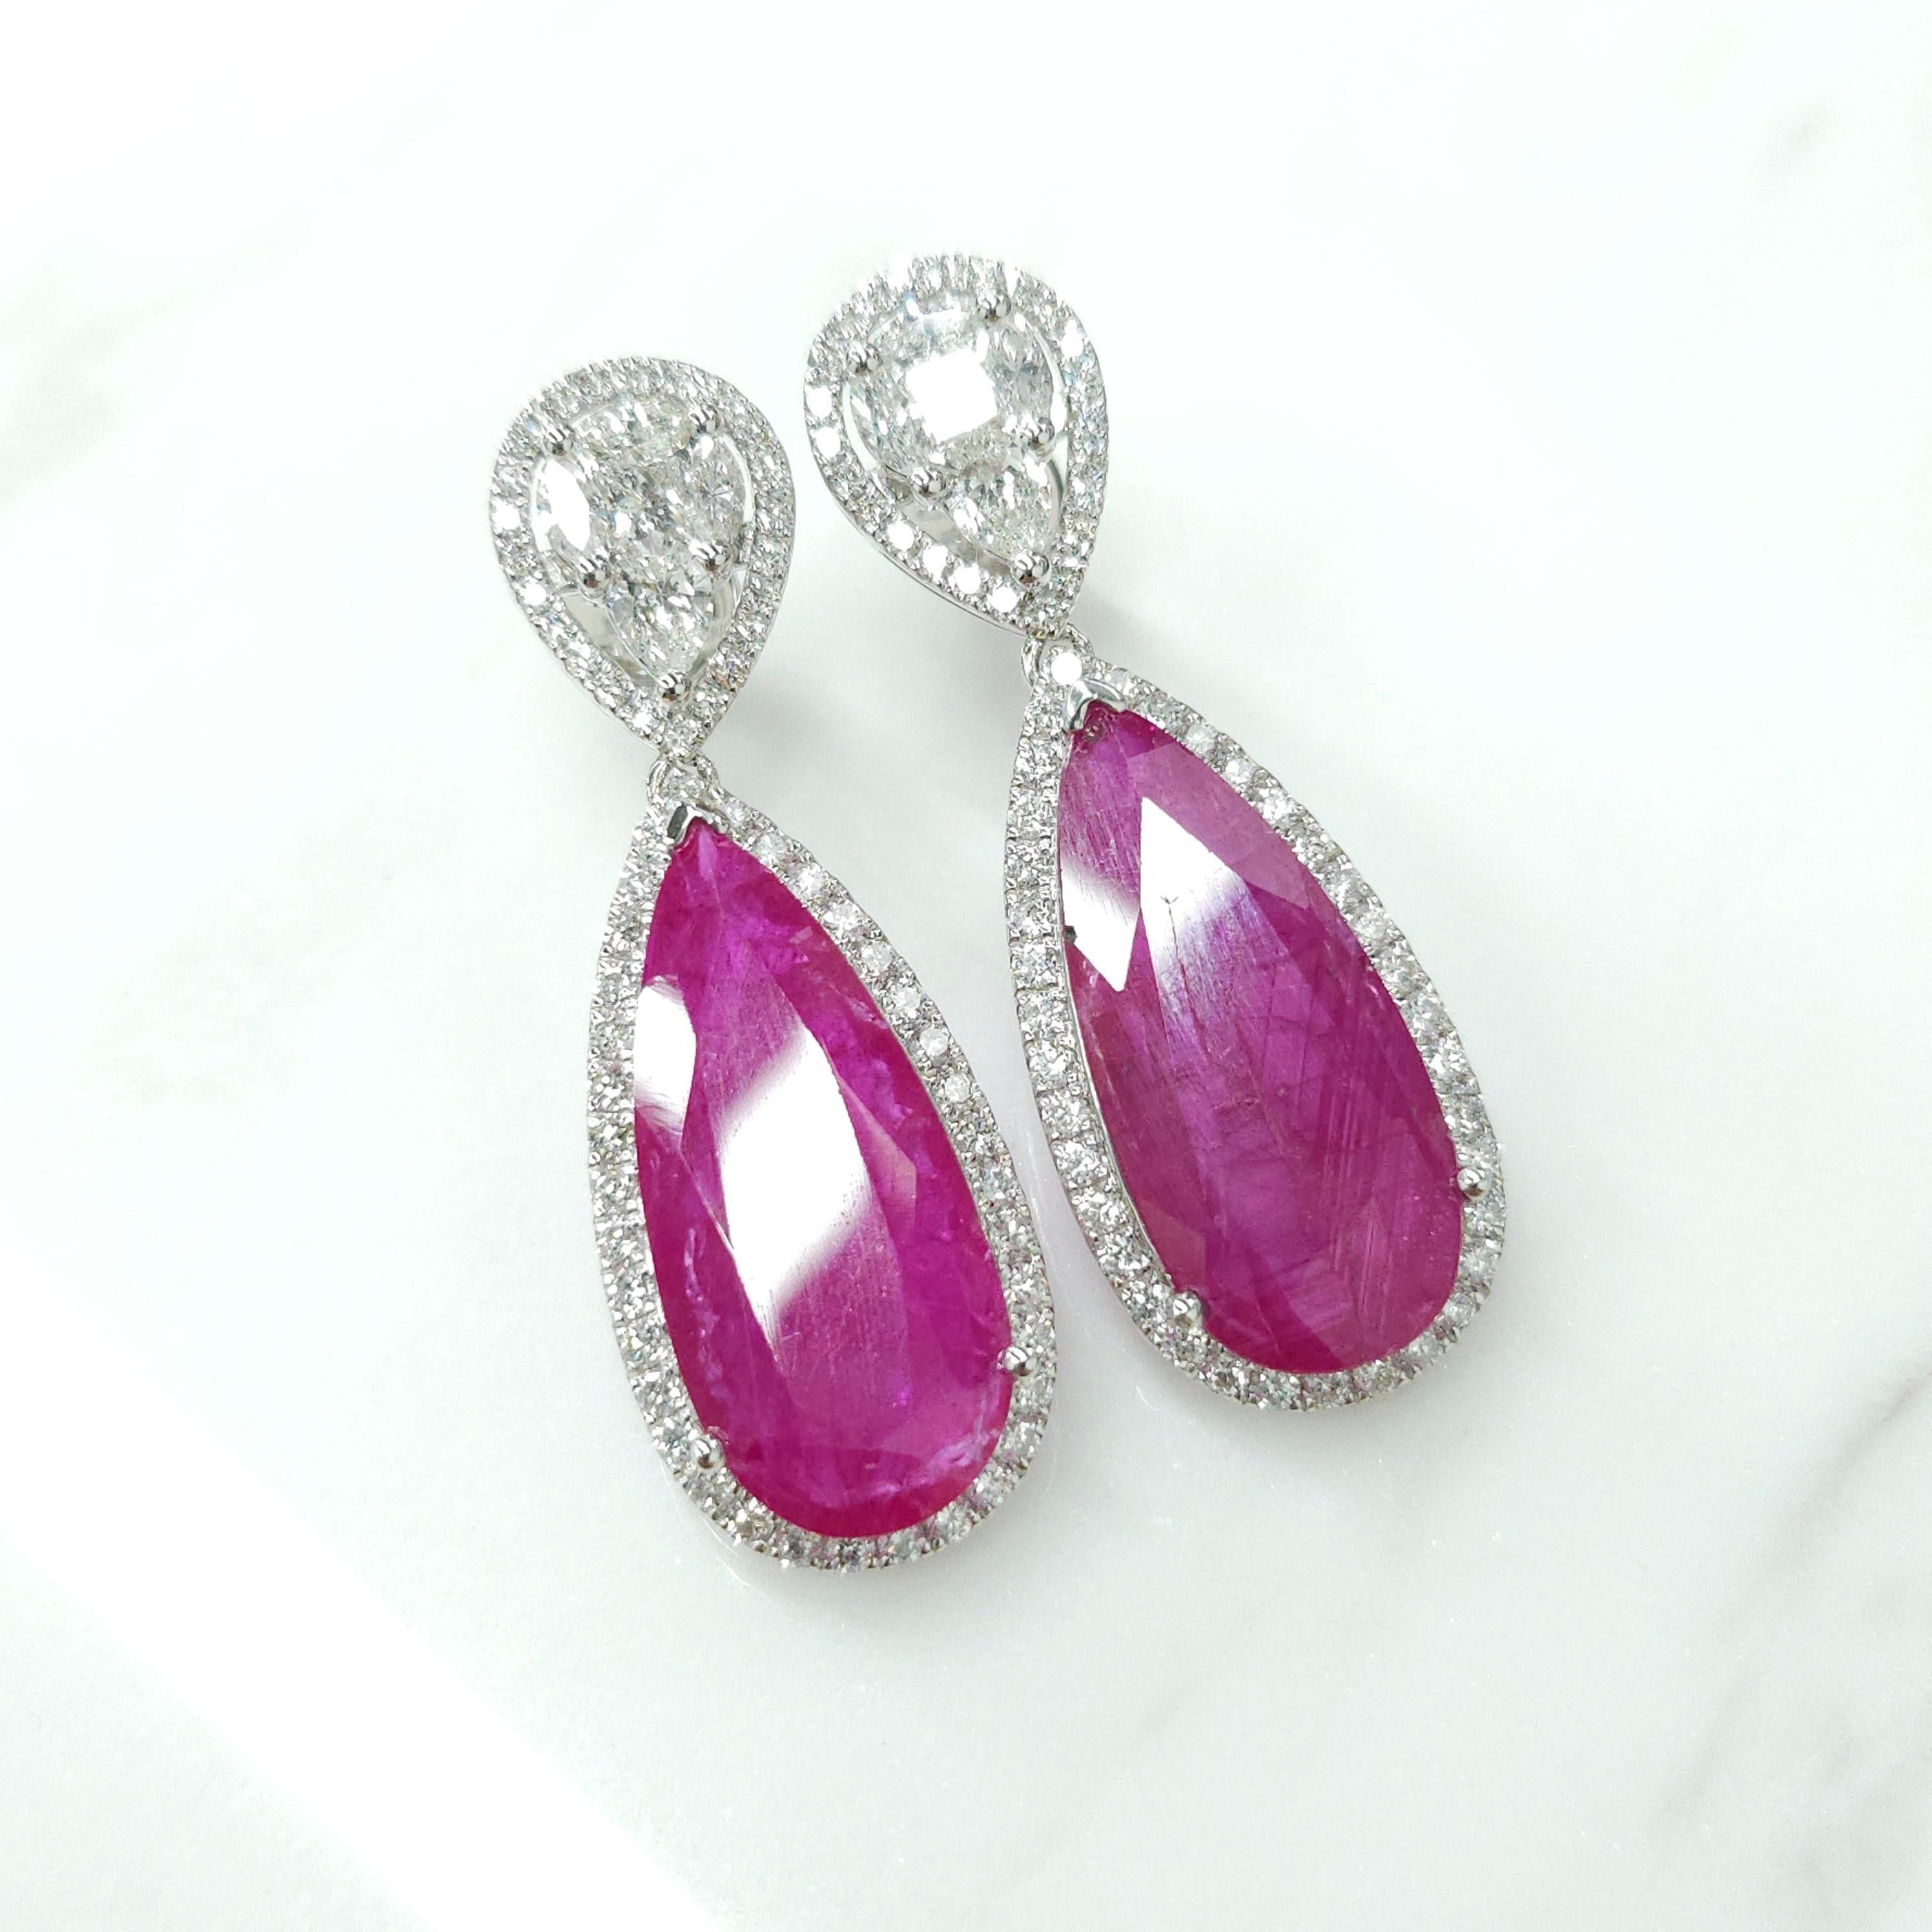 Pear Cut IGI Certified 18.49 Carat Burma Ruby &Diamond Earrings in 18K White Gold For Sale